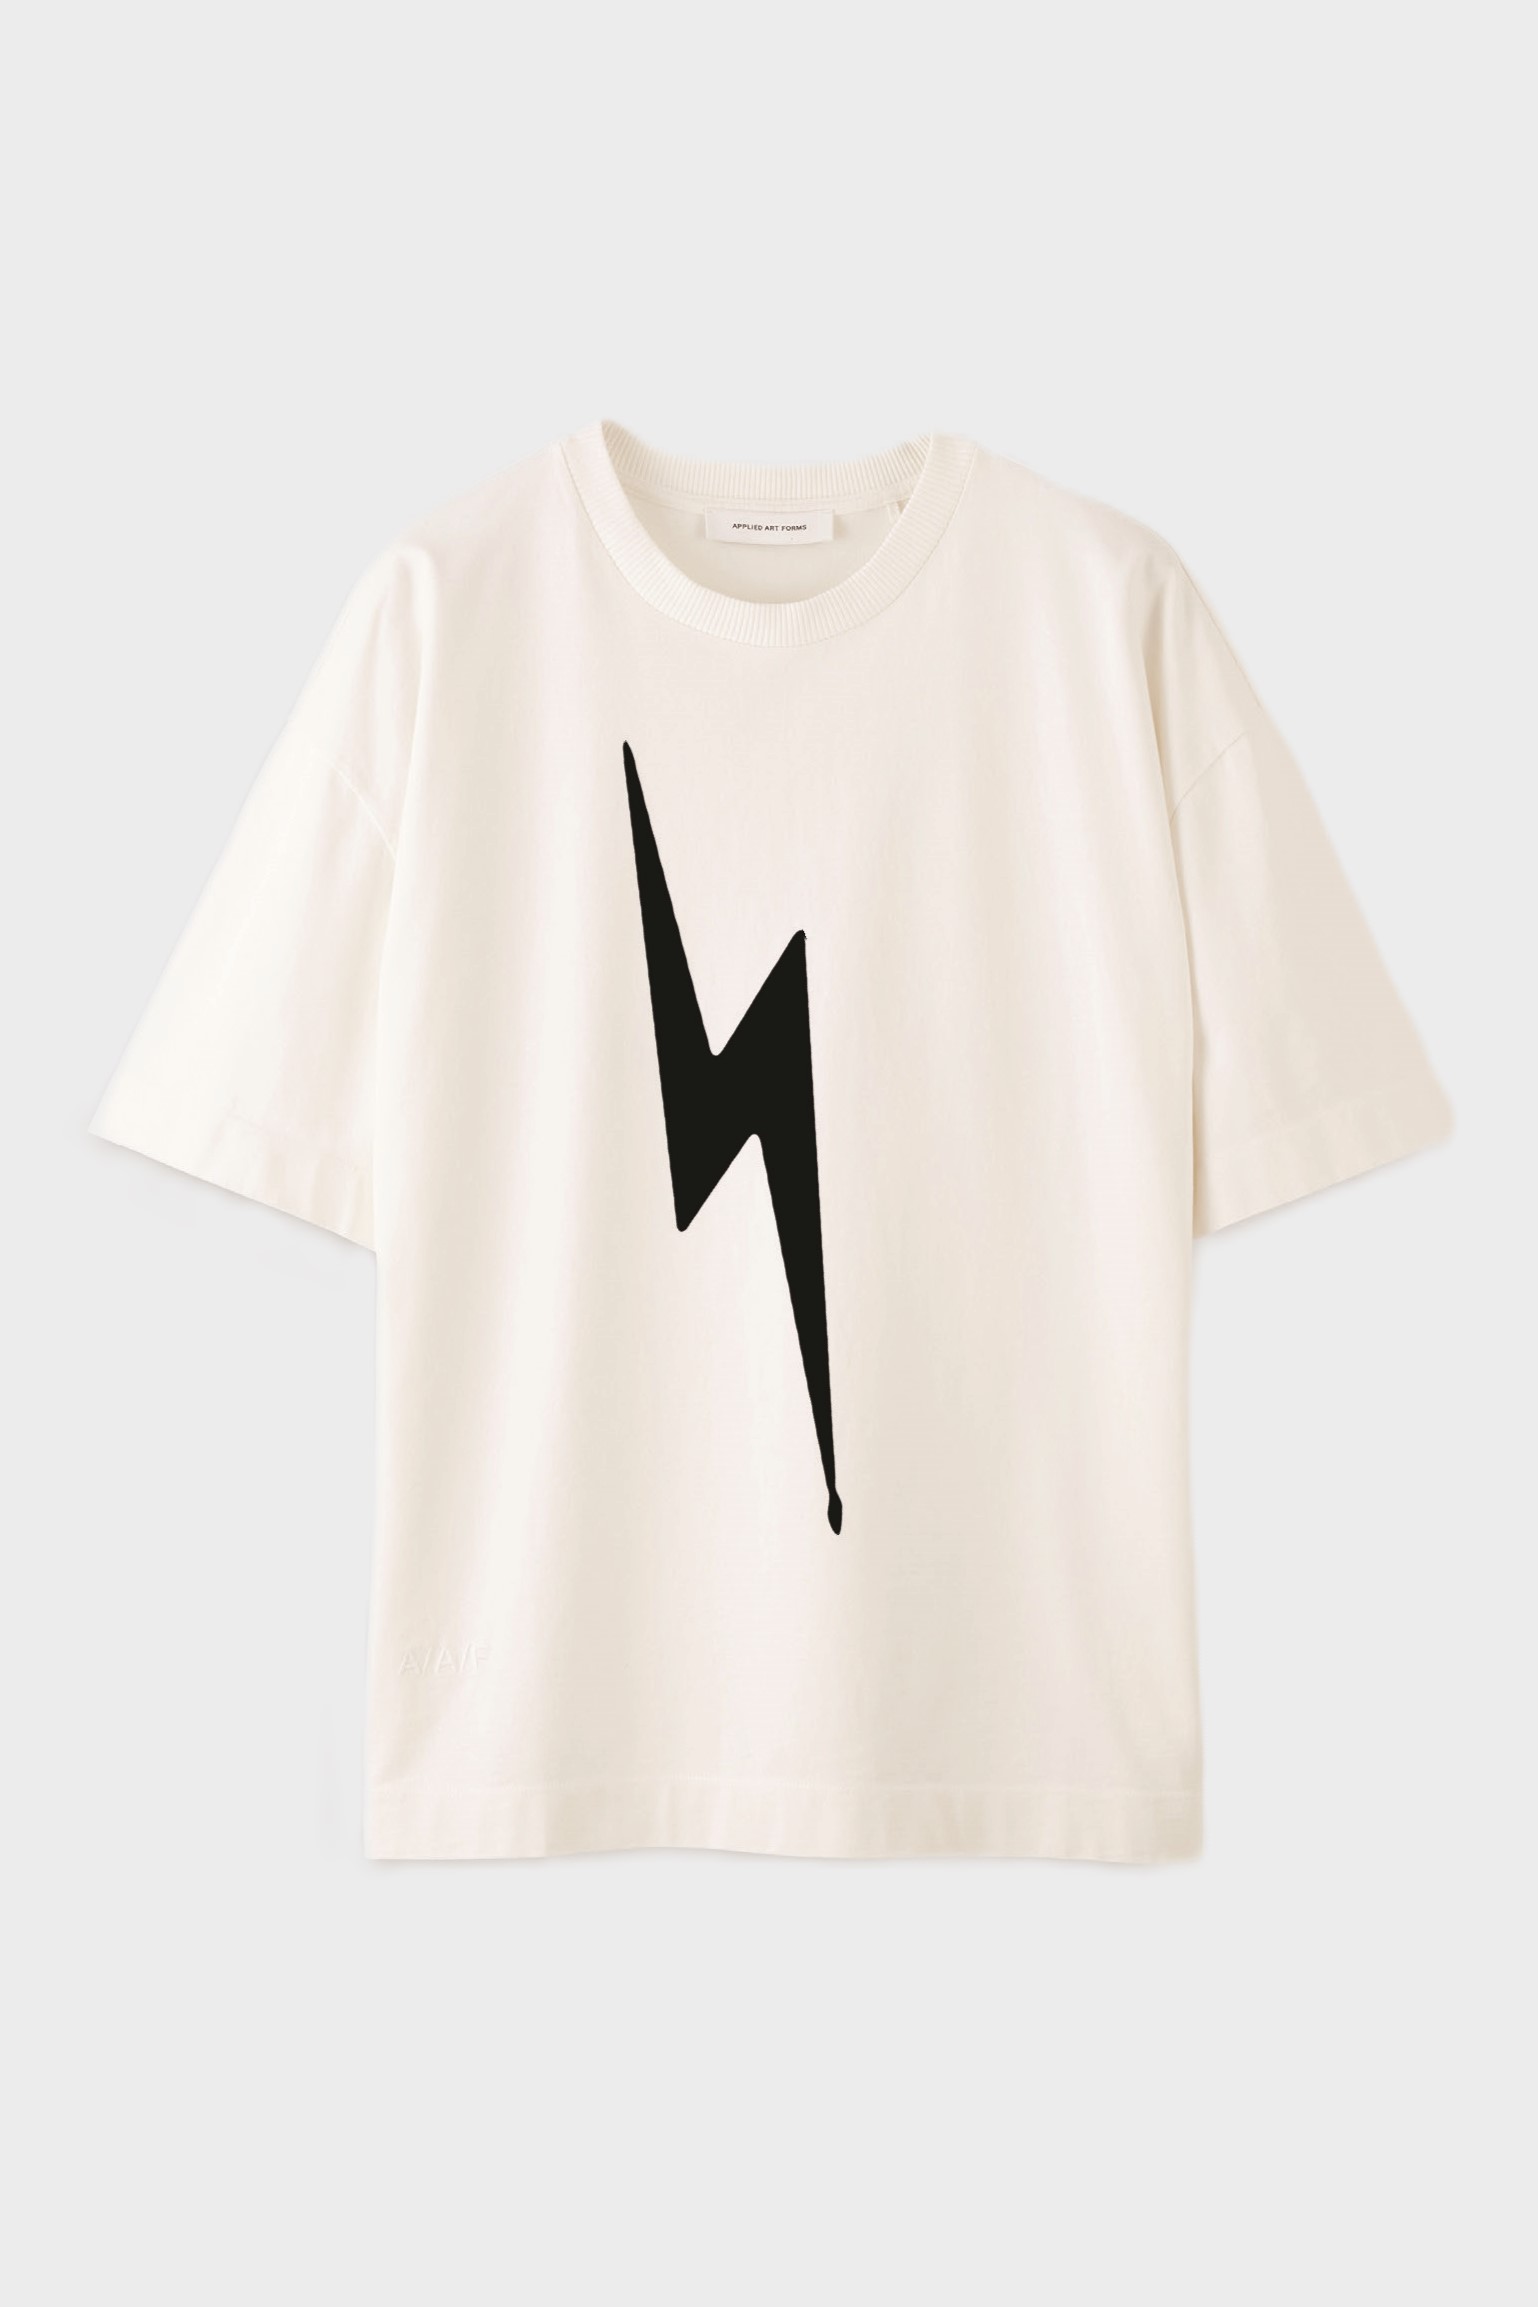 APPLIED ART FORMS Lightning Oversize T-Shirt in Light Ecru